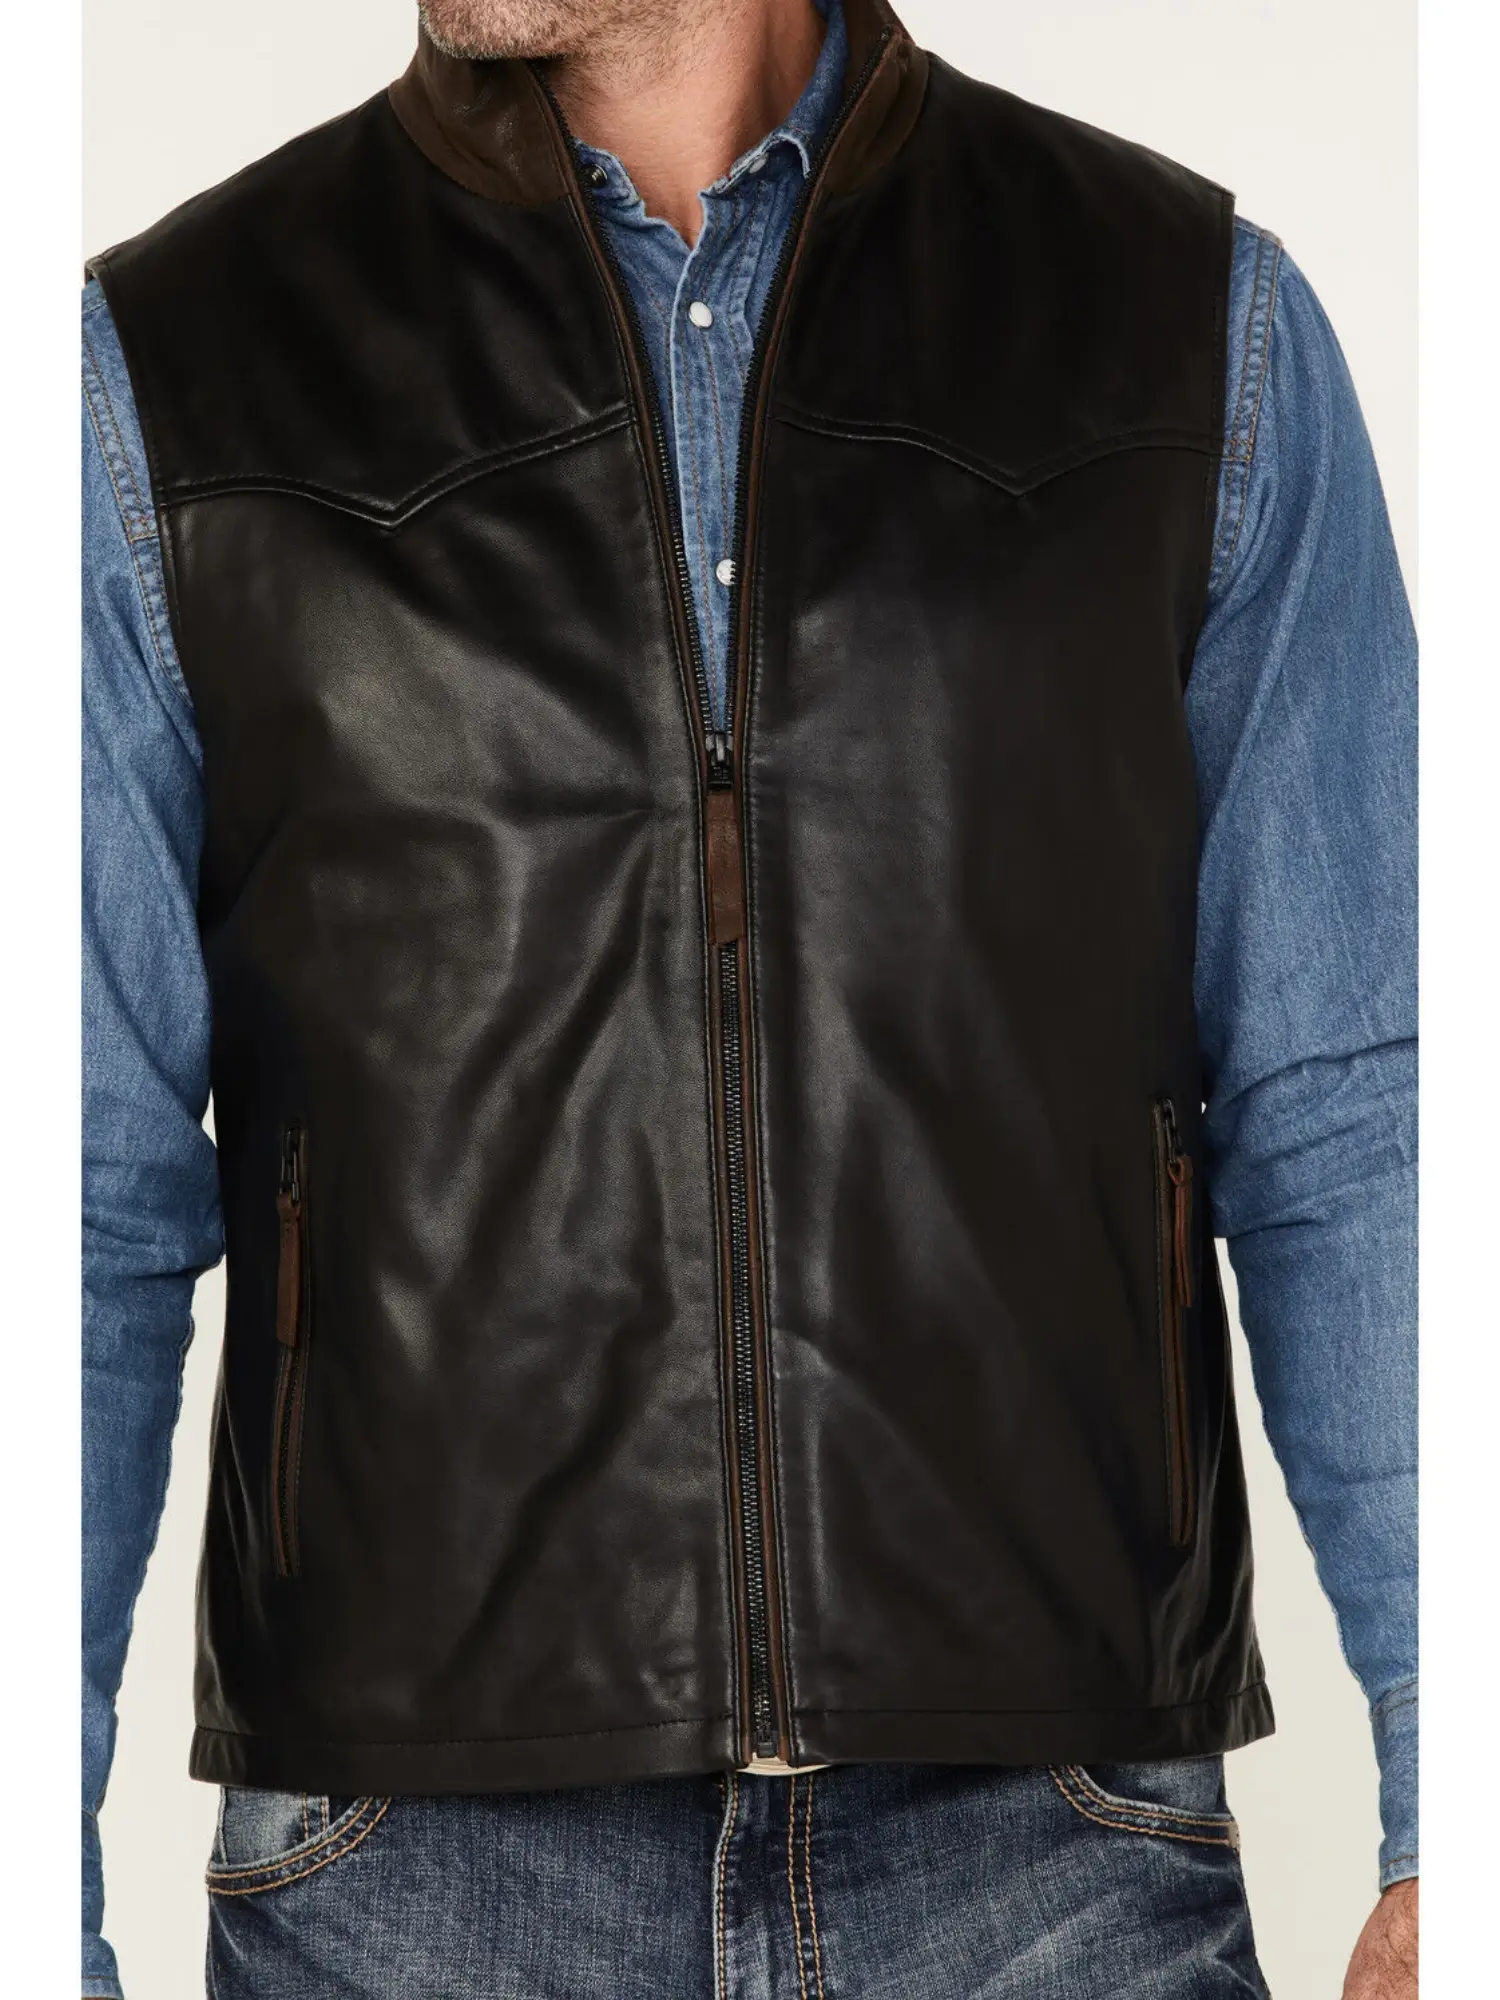 Men’s Zip-Up Leather Vest